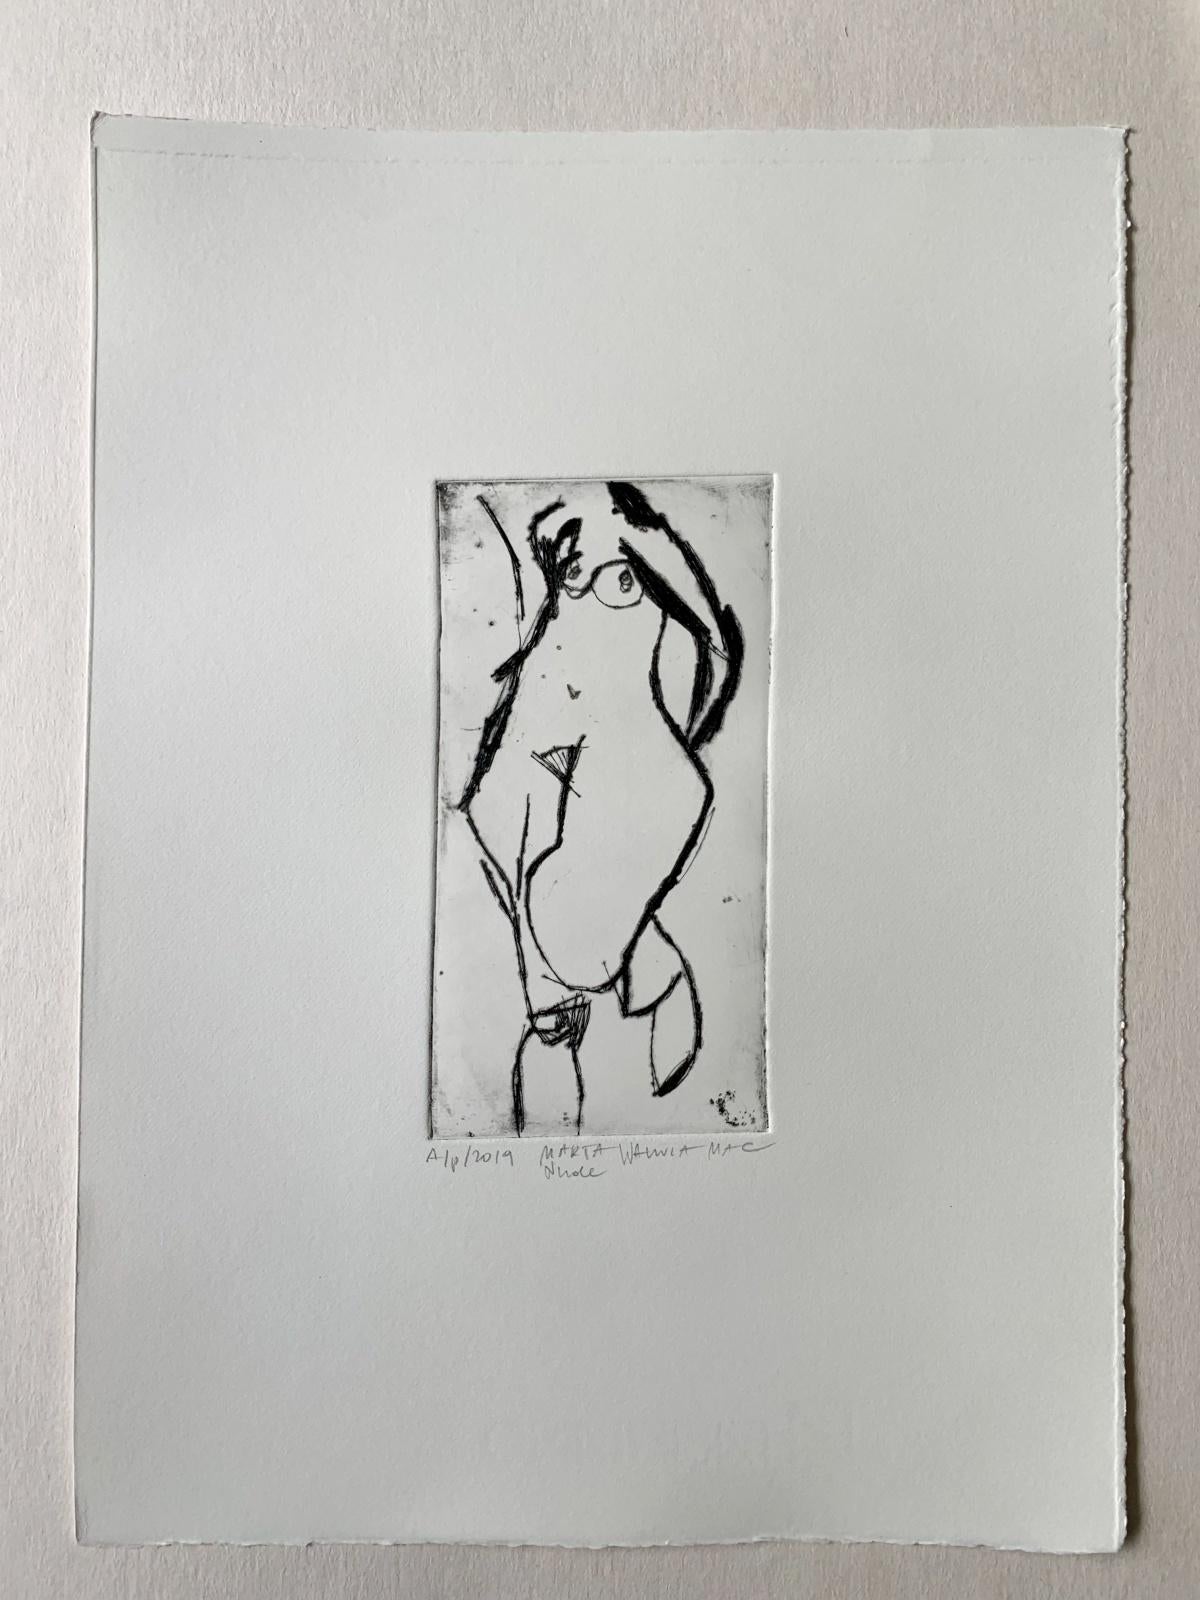 Nude - Zeitgenössischer figurativer Radierungsdruck, weibliche Künstlerin, polnische Kunst – Print von Marta Wakula-Mac